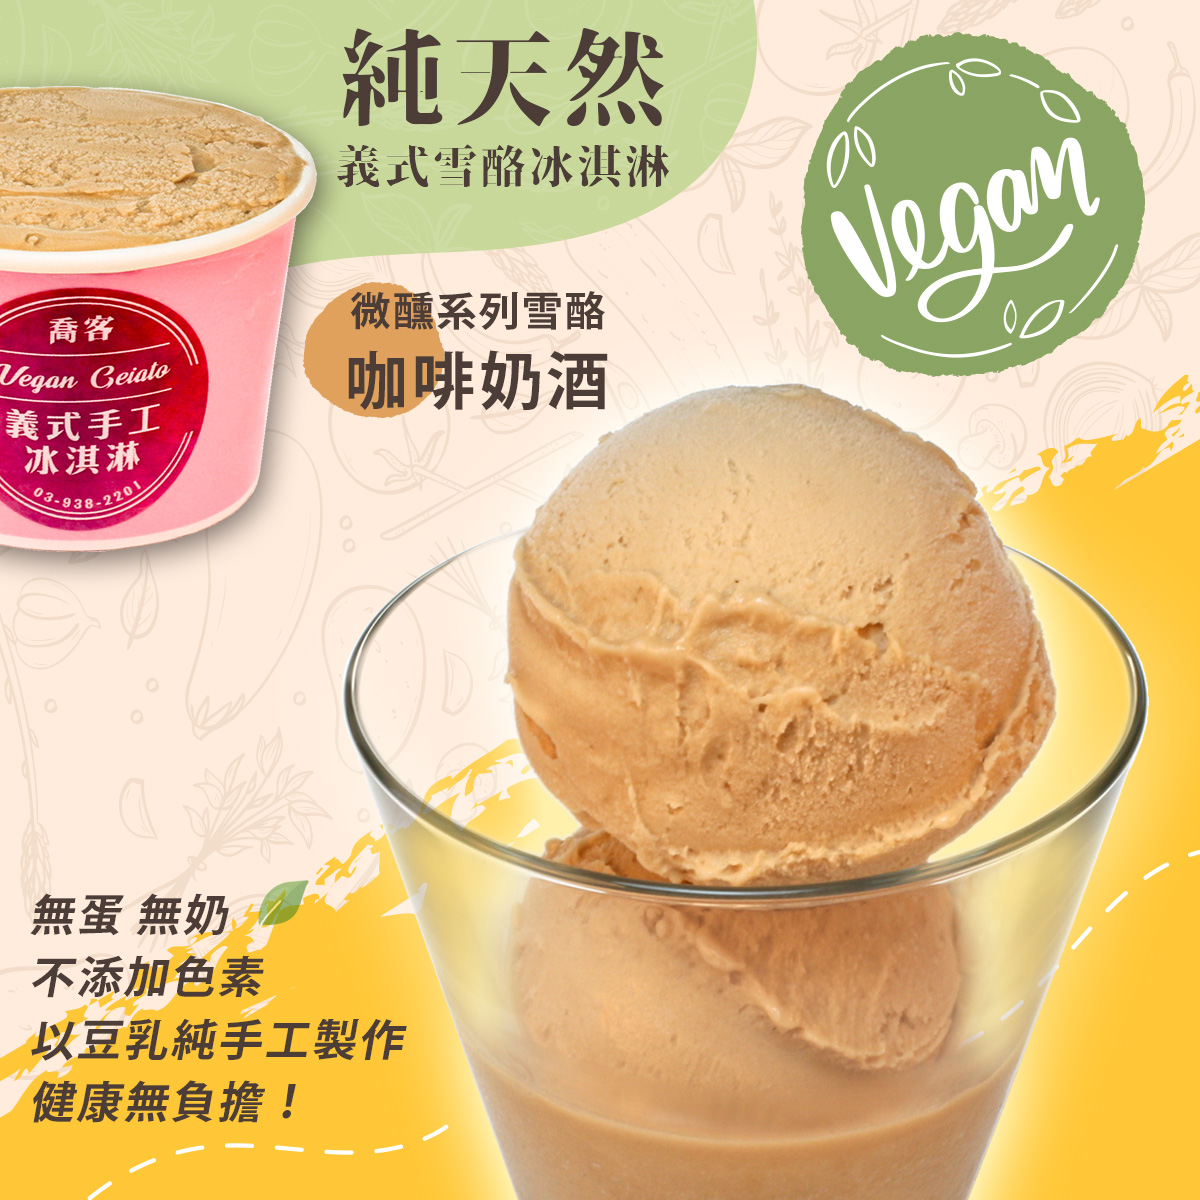 【喬客】微醺系列雪酪-咖啡奶酒 冰淇淋